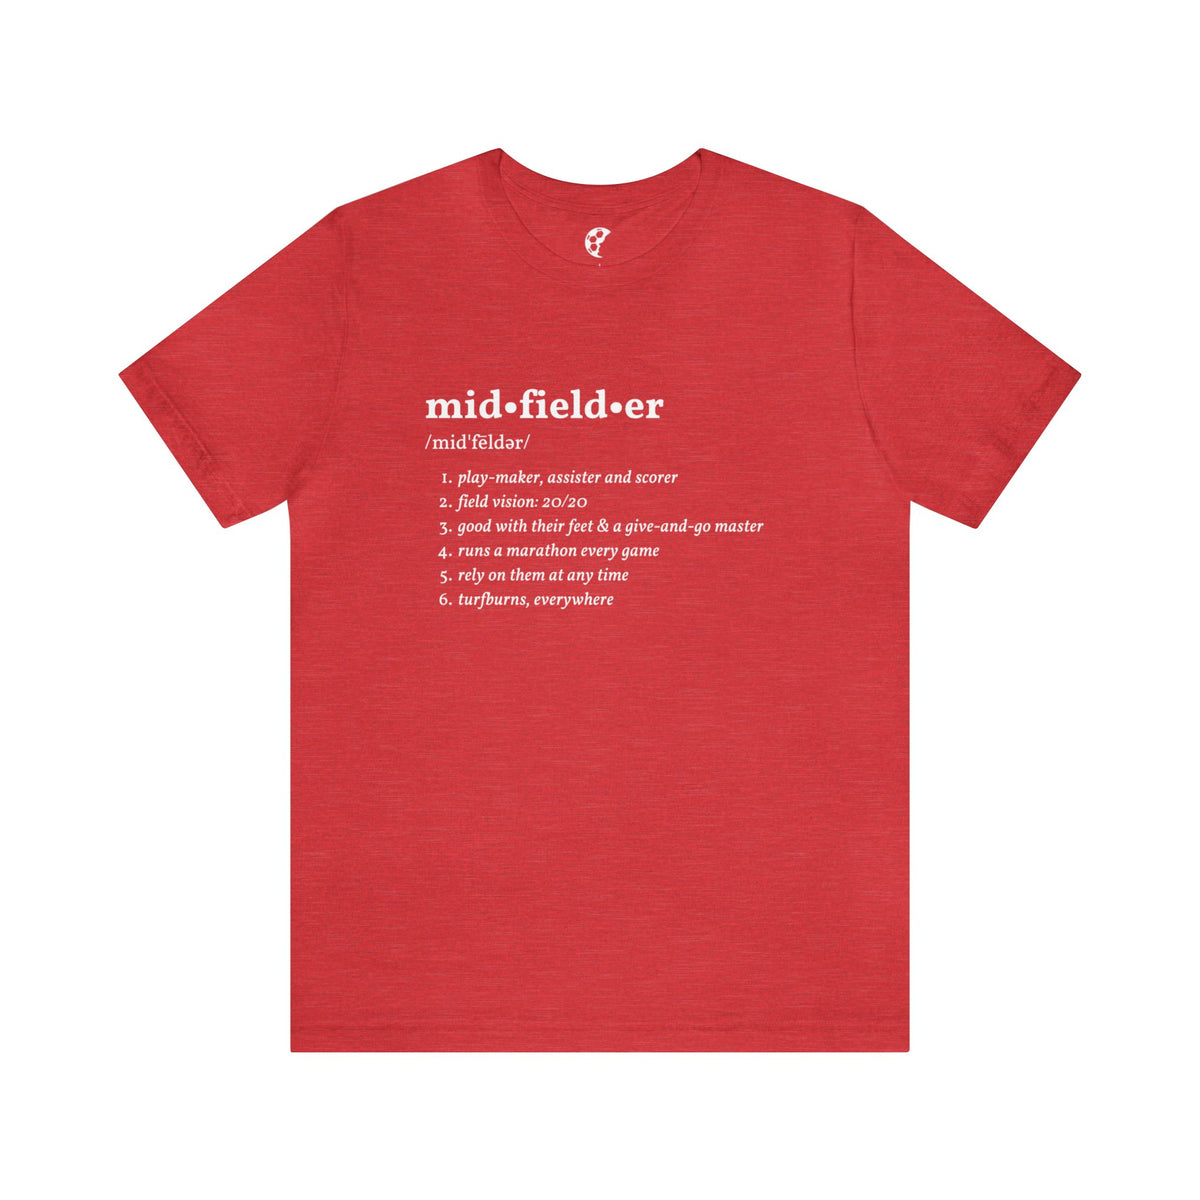 Midfielder Definition Adult T-Shirt